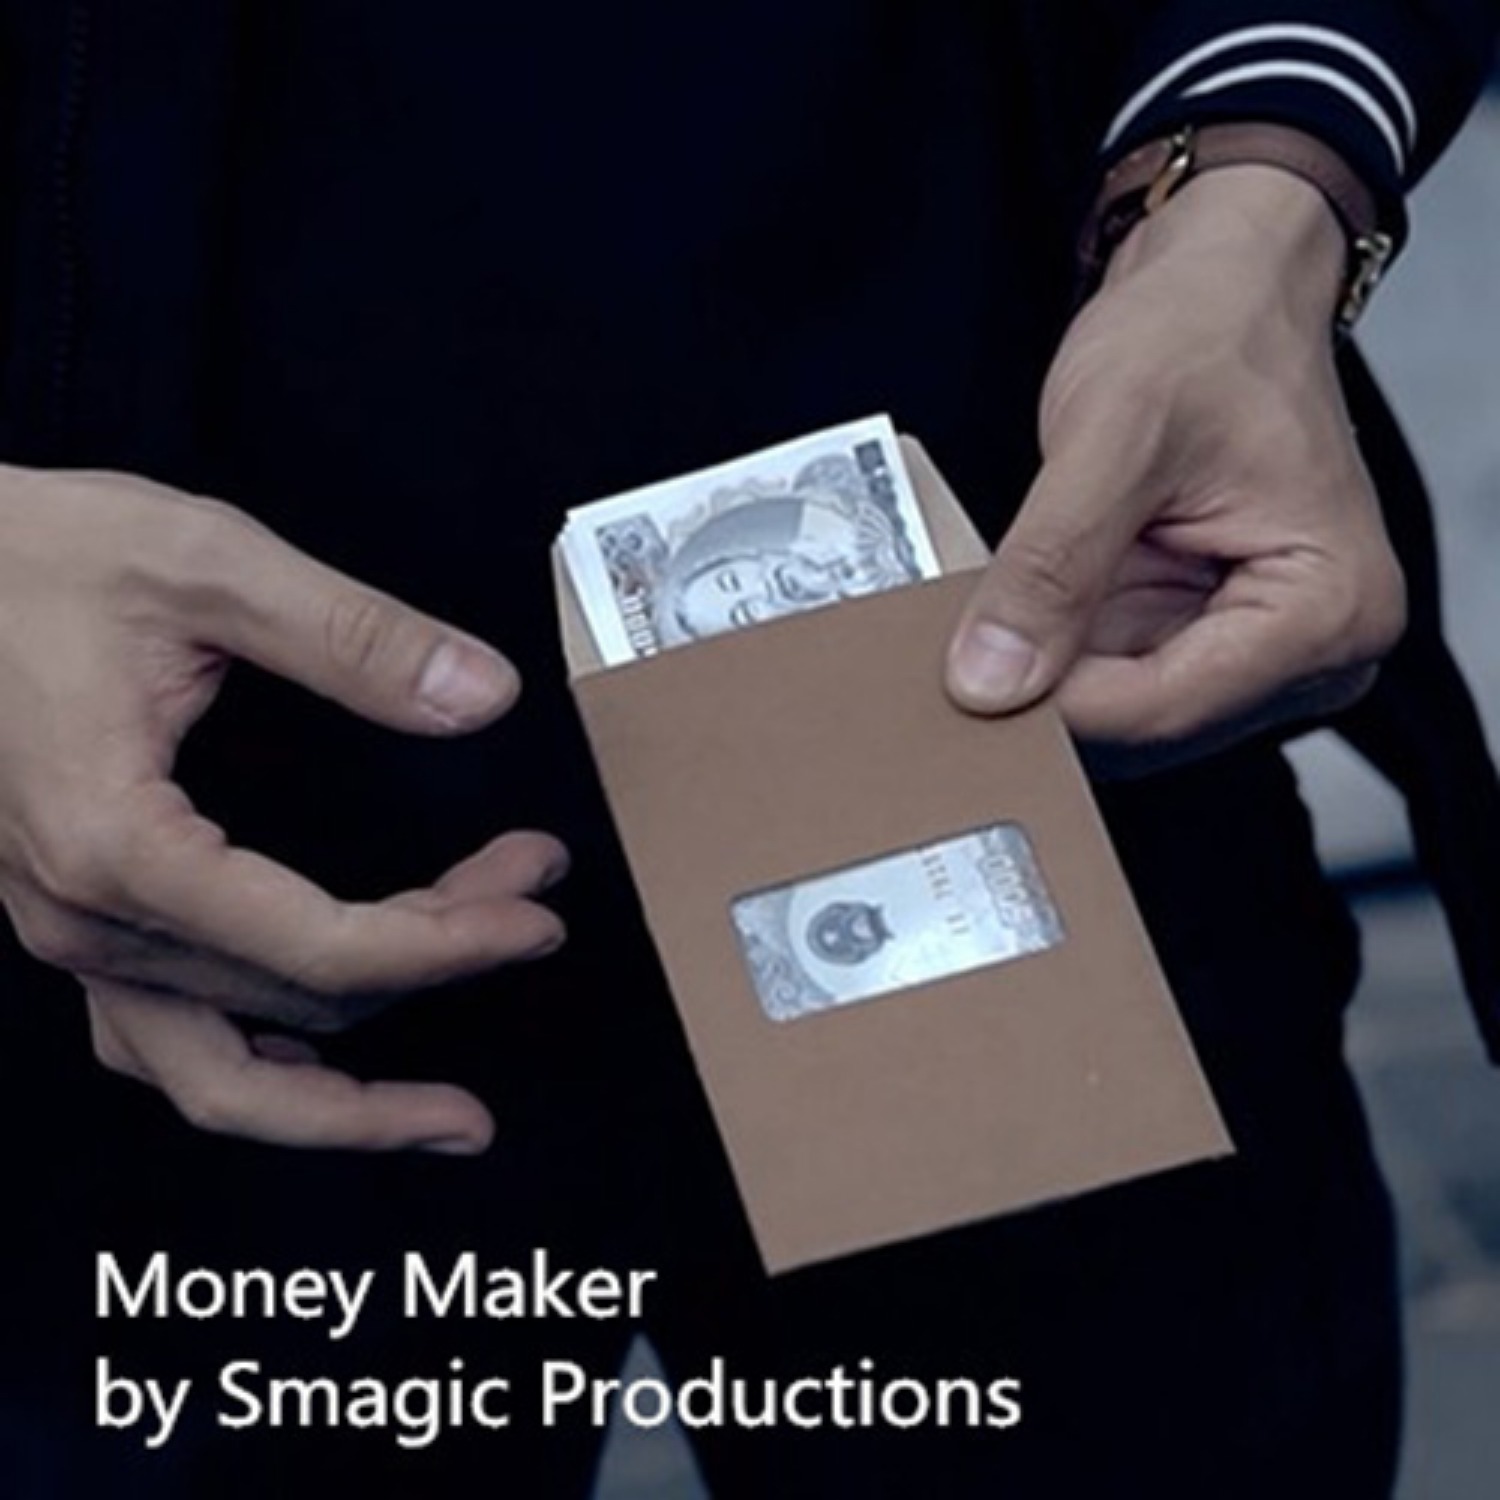 [머니메이커]Money Maker by Smagic Productions 지폐를 사라지게하거나, 나타나거나, 바꿔버릴 수 있는 특별한 봉투입니다.